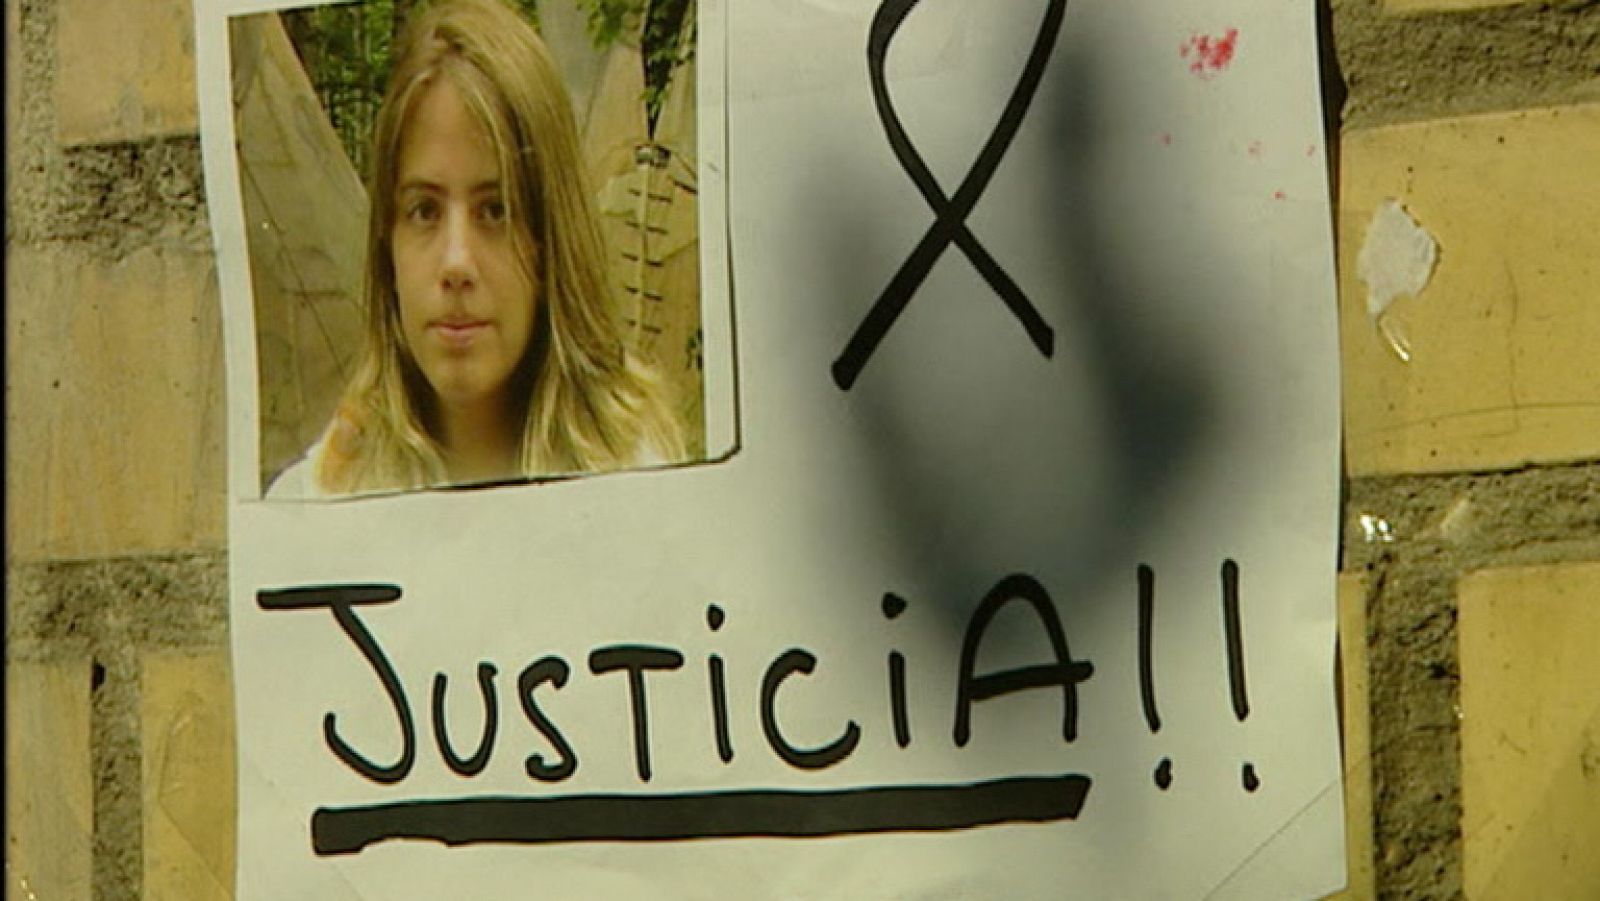 La joven sevillana lleva desaparecida desde el 24 de enero de 2009 y su cuerpo aún no ha sido hallado.